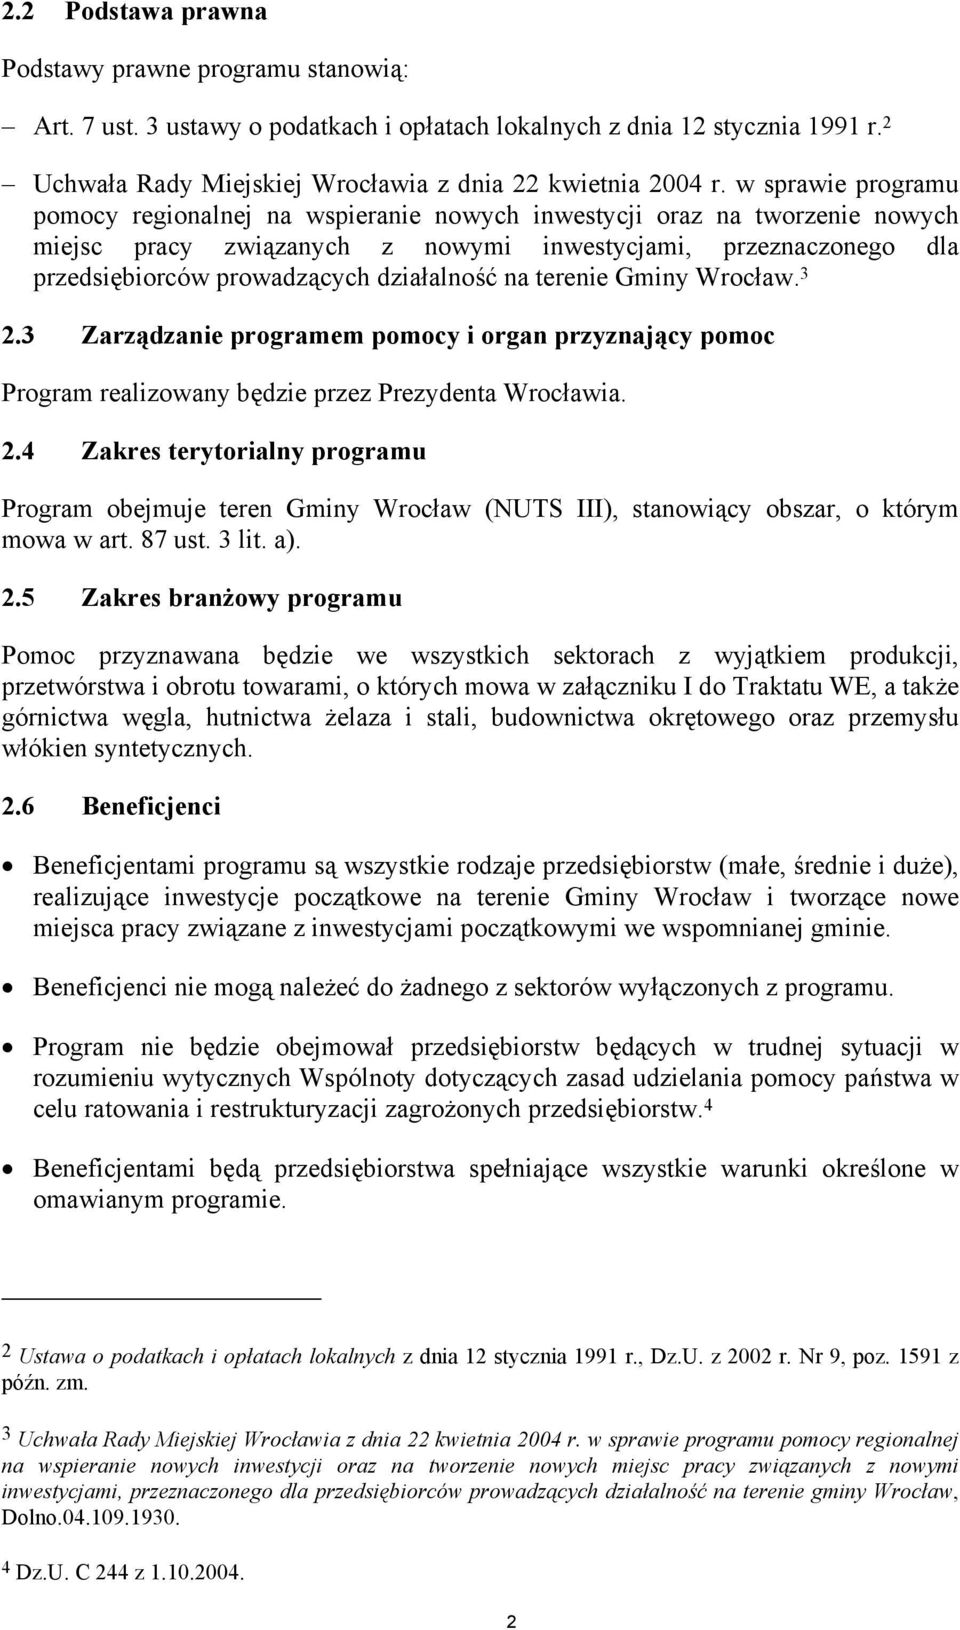 działalność na terenie Gminy Wrocław. 3 2.3 Zarządzanie programem pomocy i organ przyznający pomoc Program realizowany będzie przez Prezydenta Wrocławia. 2.4 Zakres terytorialny programu Program obejmuje teren Gminy Wrocław (NUTS III), stanowiący obszar, o którym mowa w art.